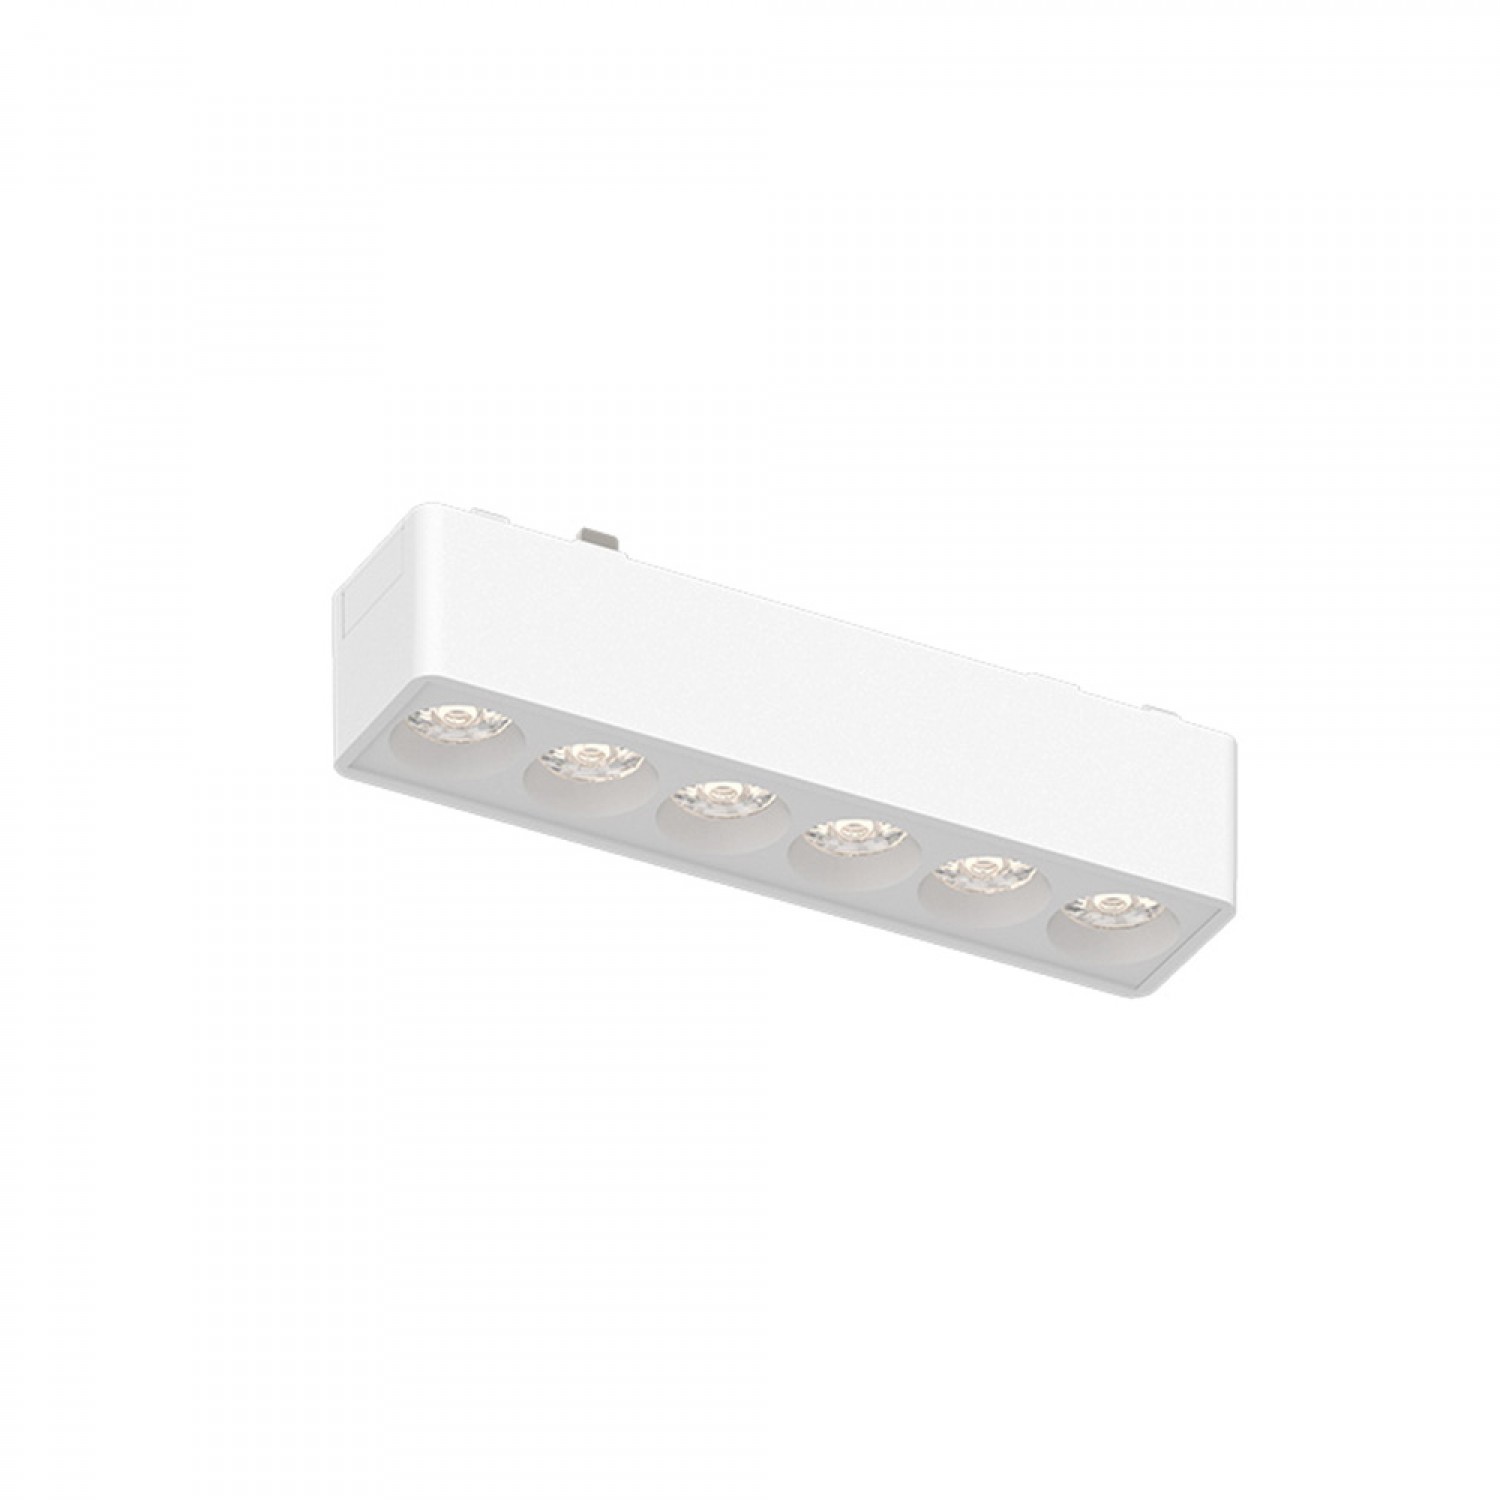 Φωτιστικό LED 6W 3000K για Ultra-Thin μαγνητική ράγα σε λευκή απόχρωση D:12,2cmX2,4cm (T02801-WH)